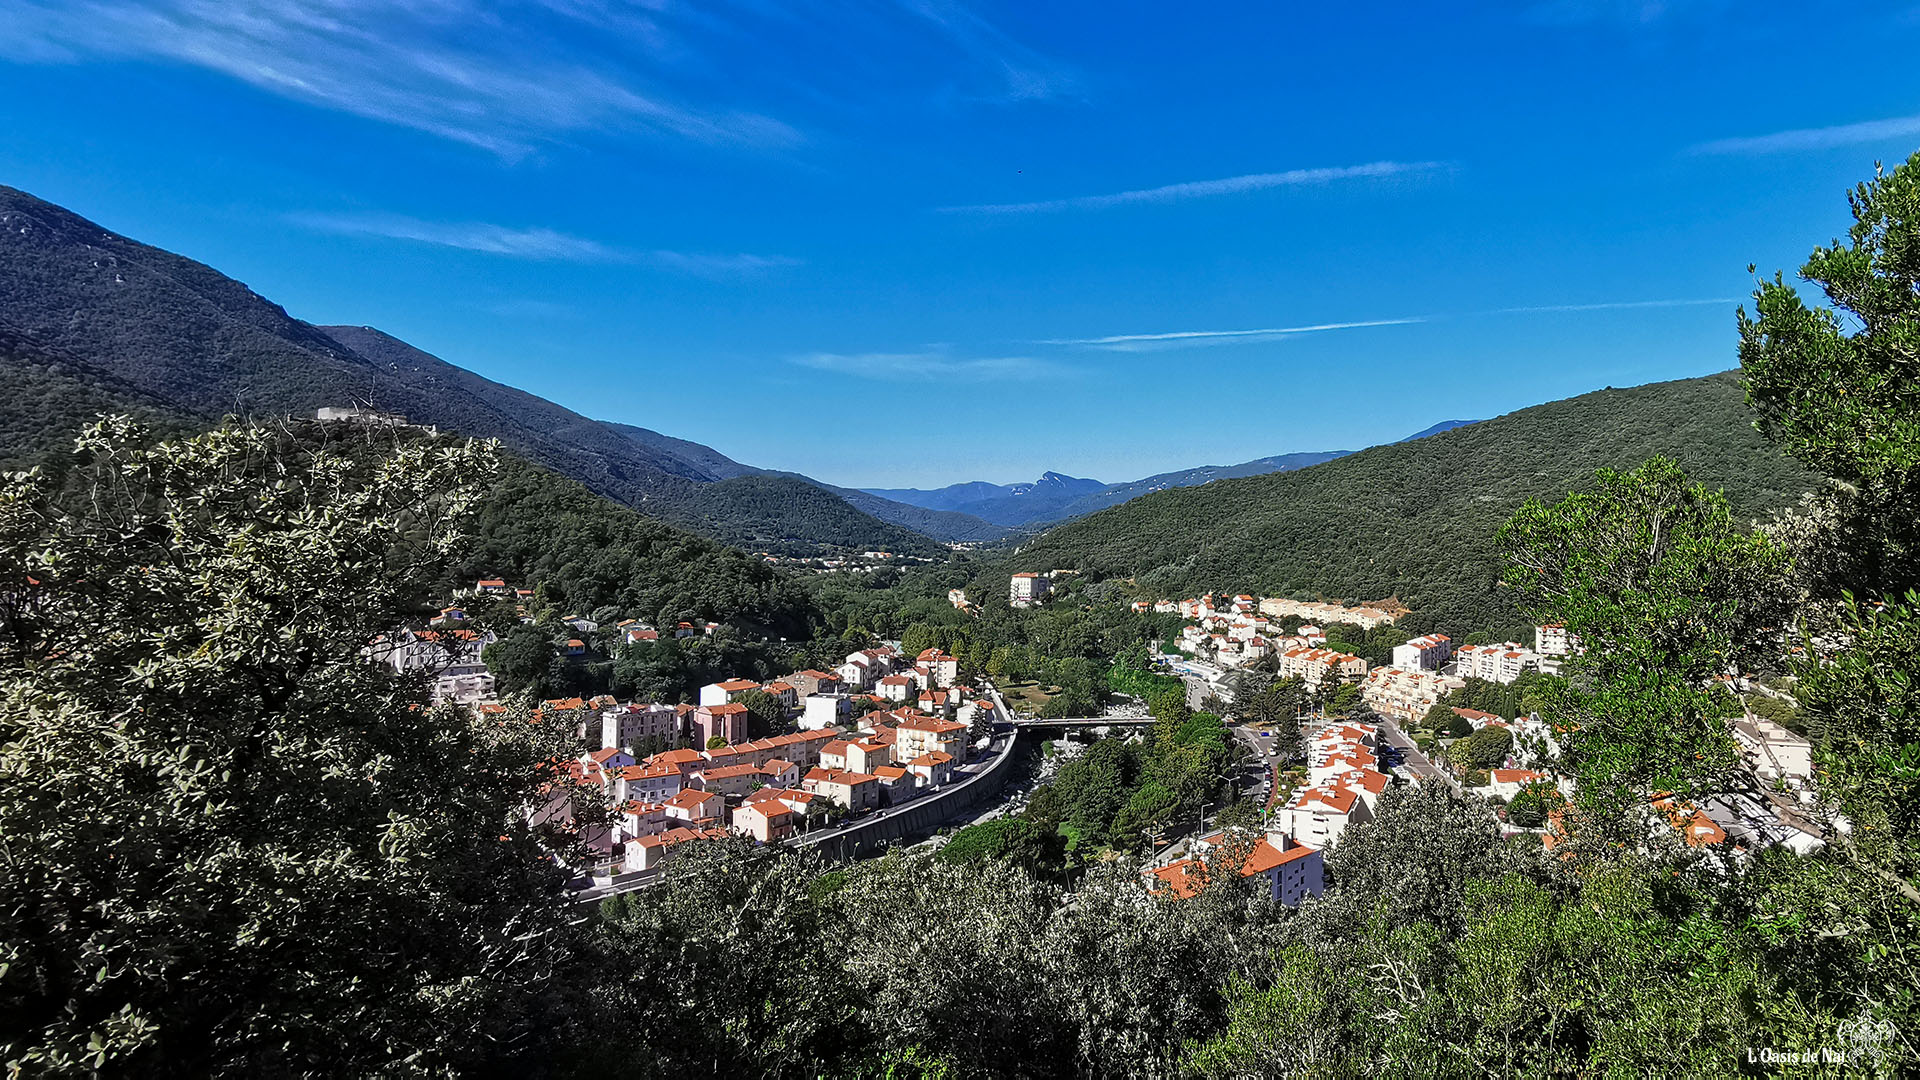 Montbolo, randonnée, vélo, haut valespir, france, méditerranée, paysages, l'oasis de nat